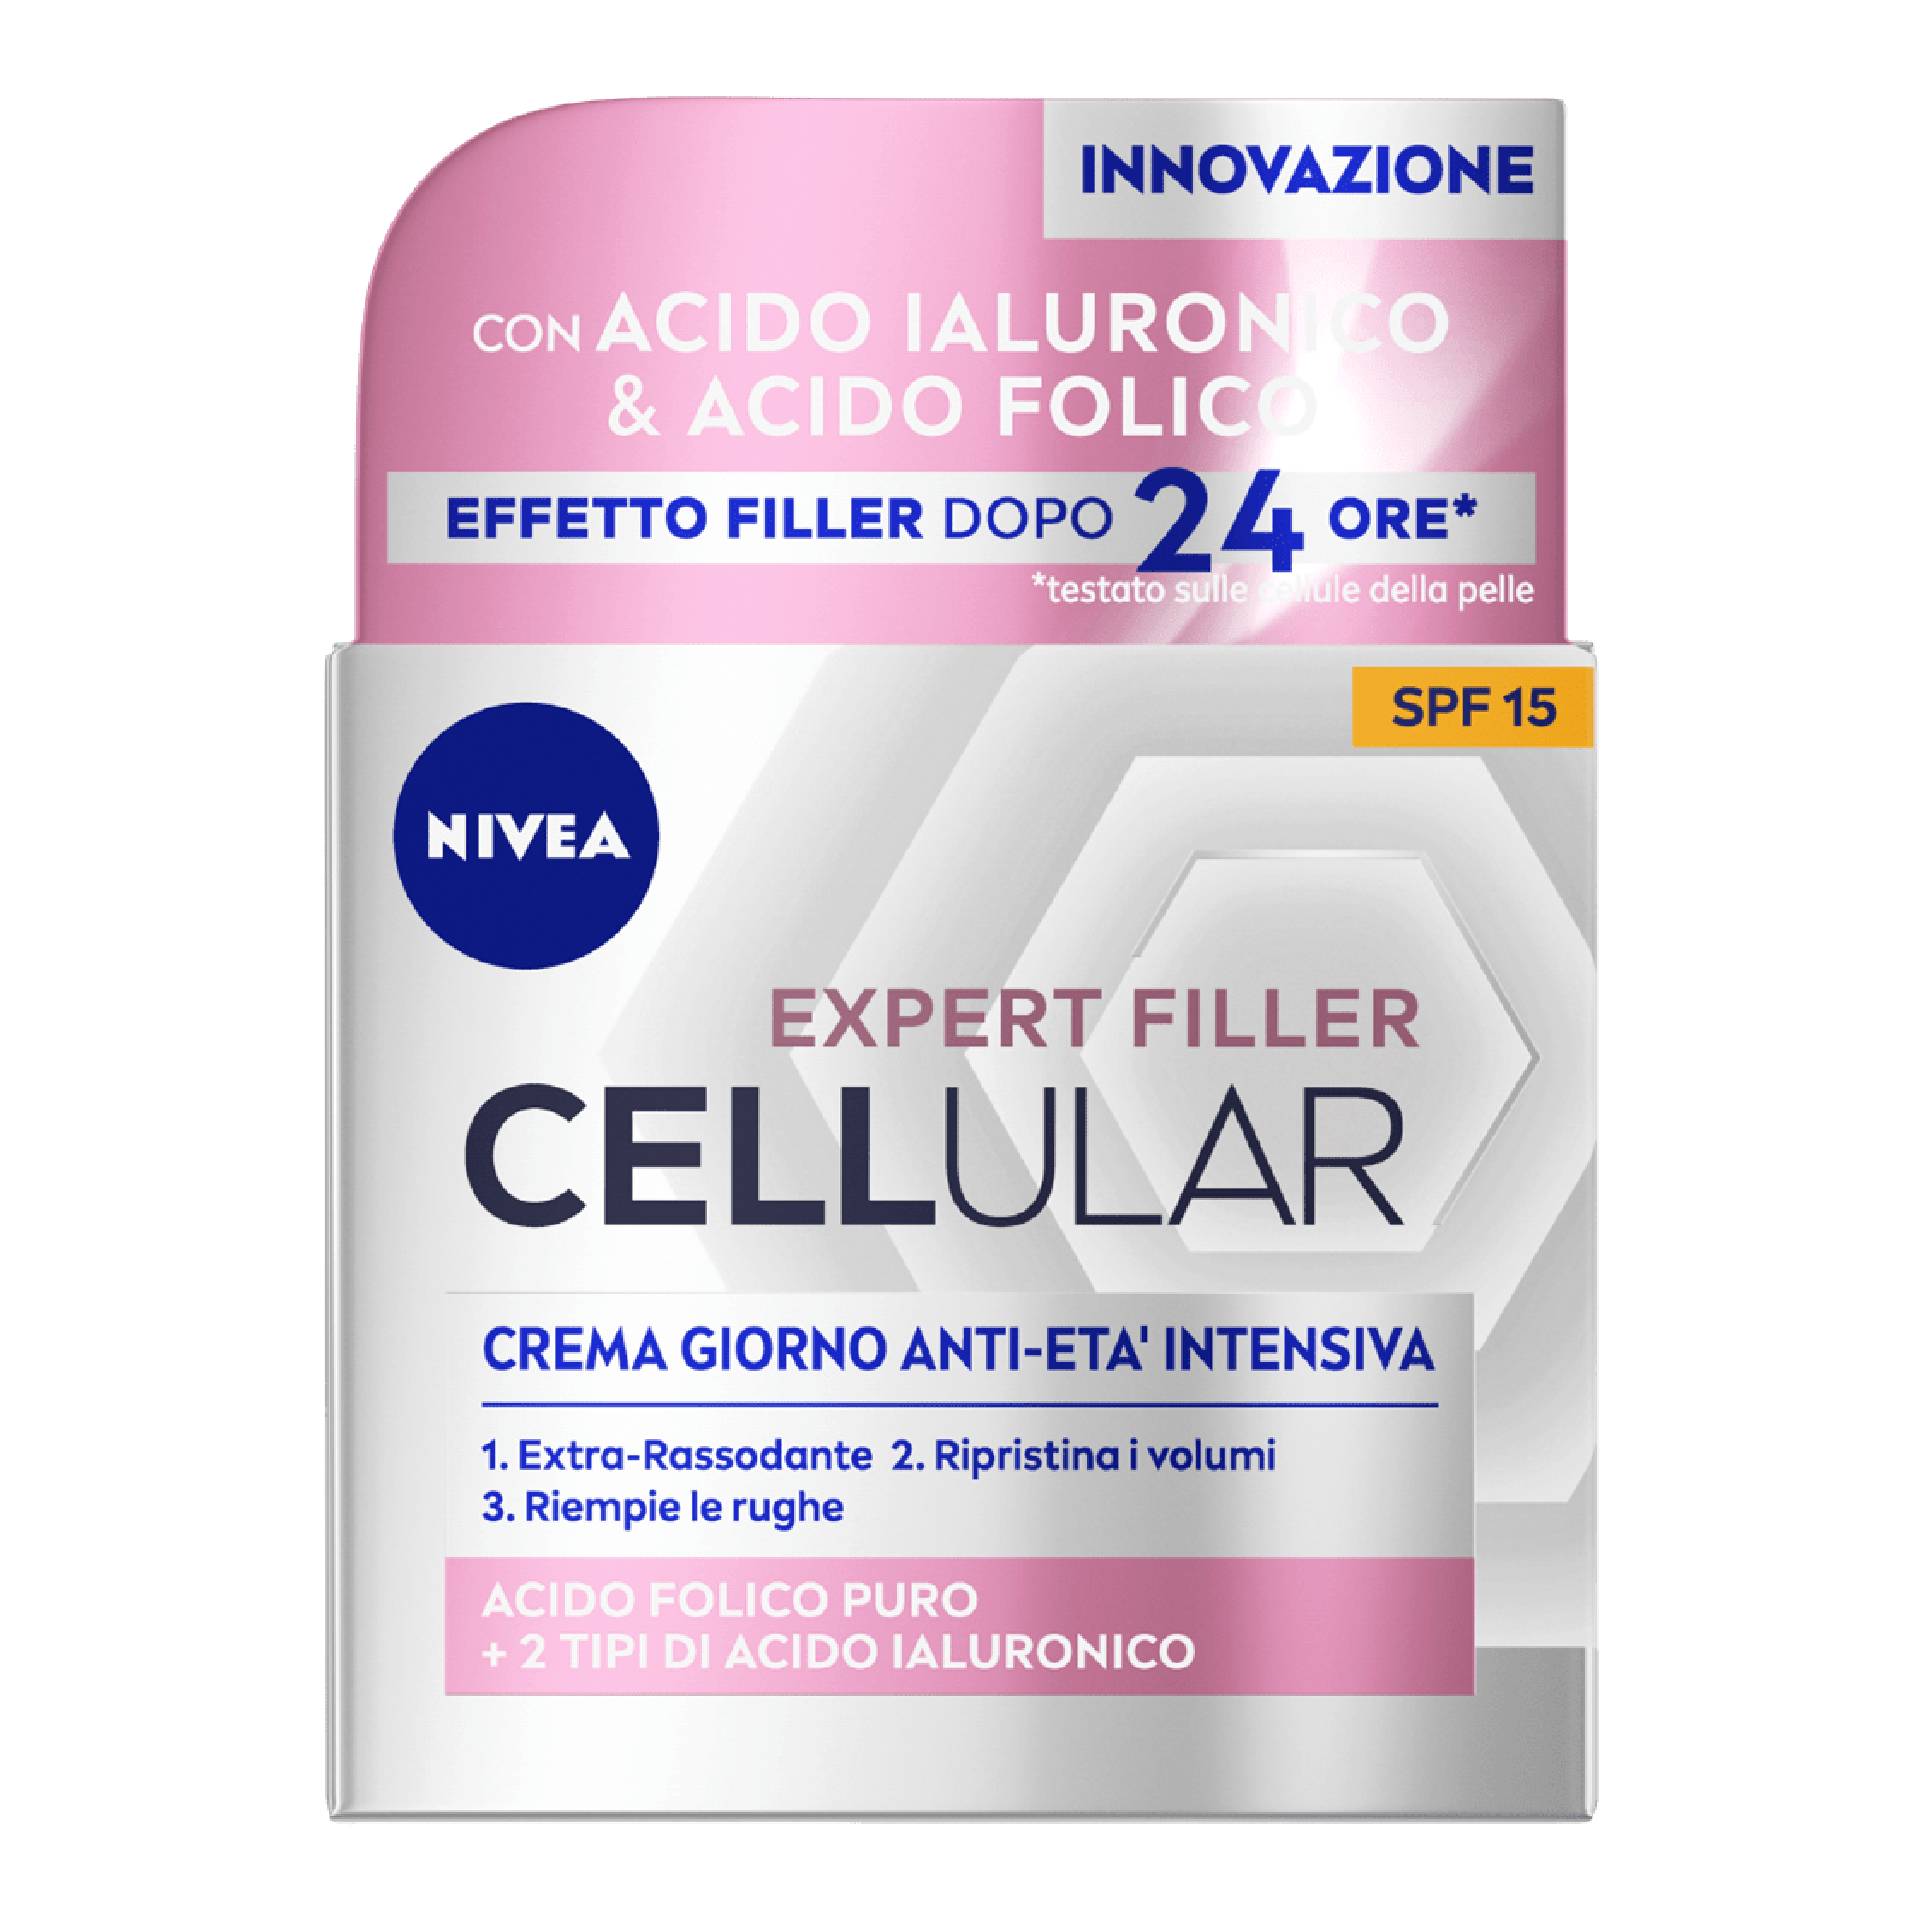 Nivea Cellular Expert Filler Crema Giorno Antietà Intensiva Spf15 50ml